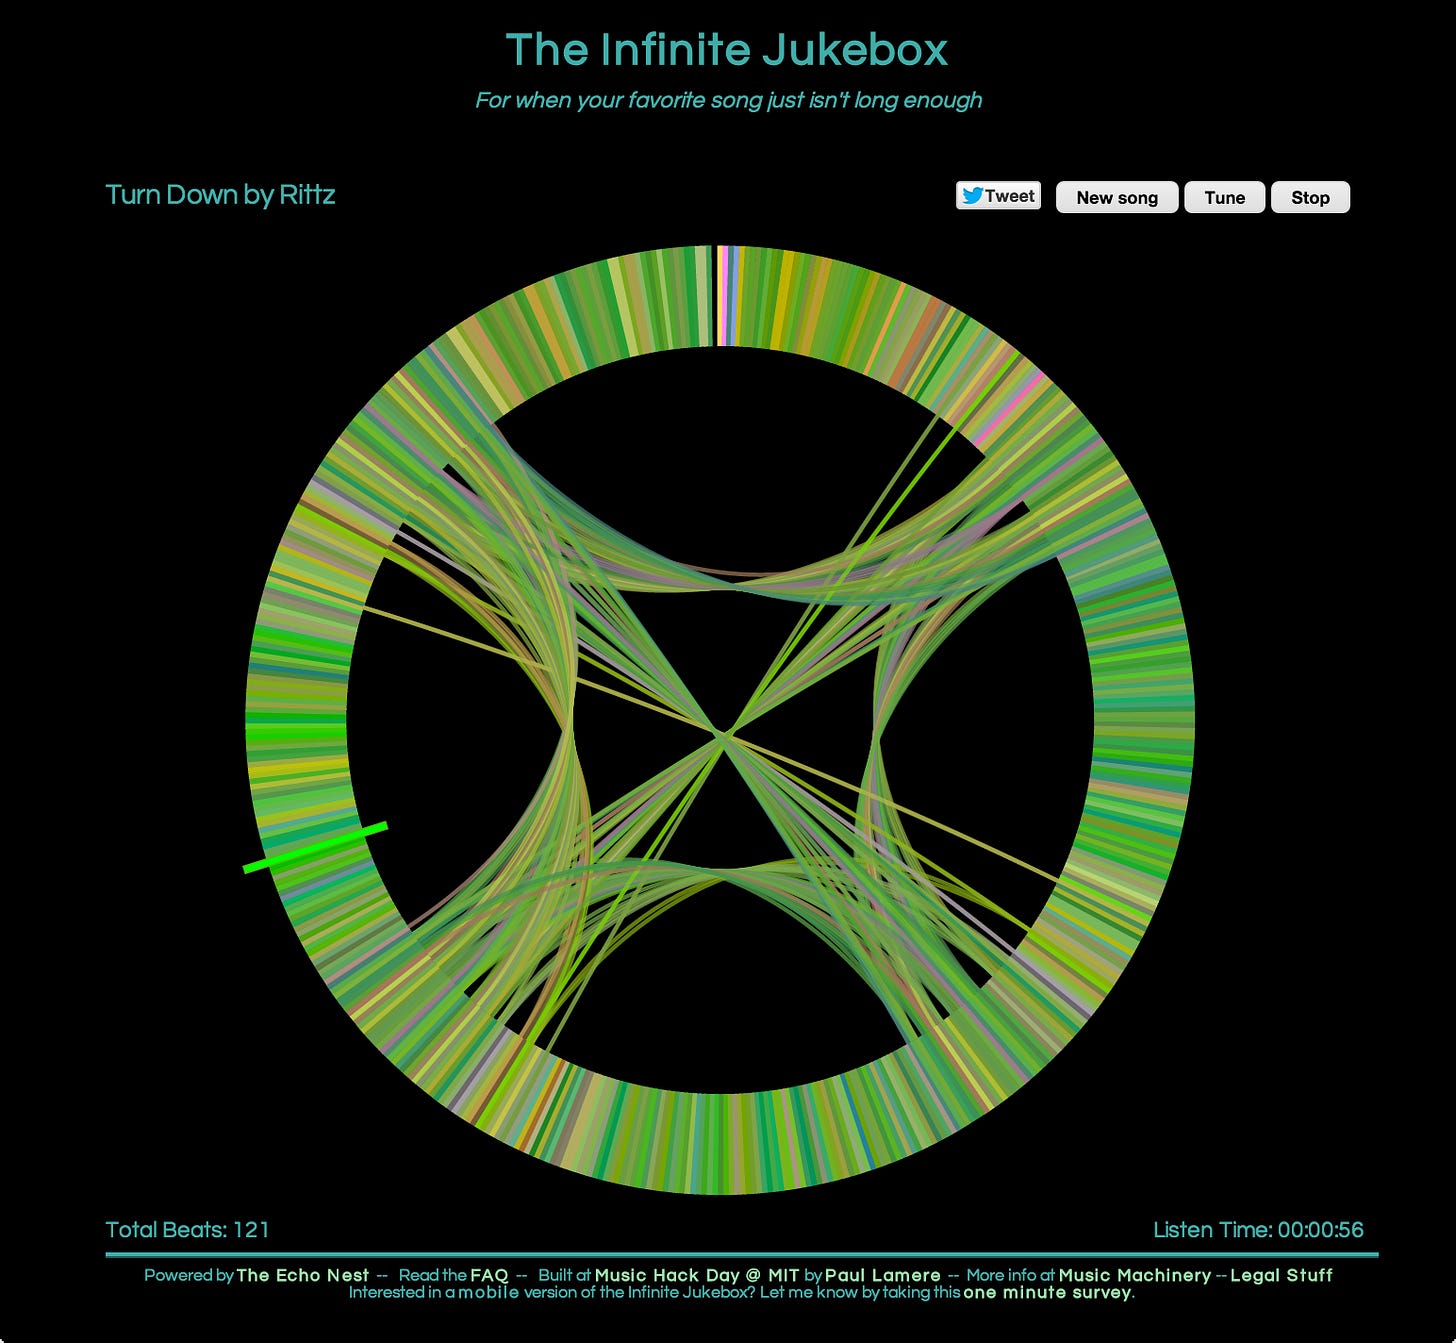 Infinite Jukebox improved | Music Machinery